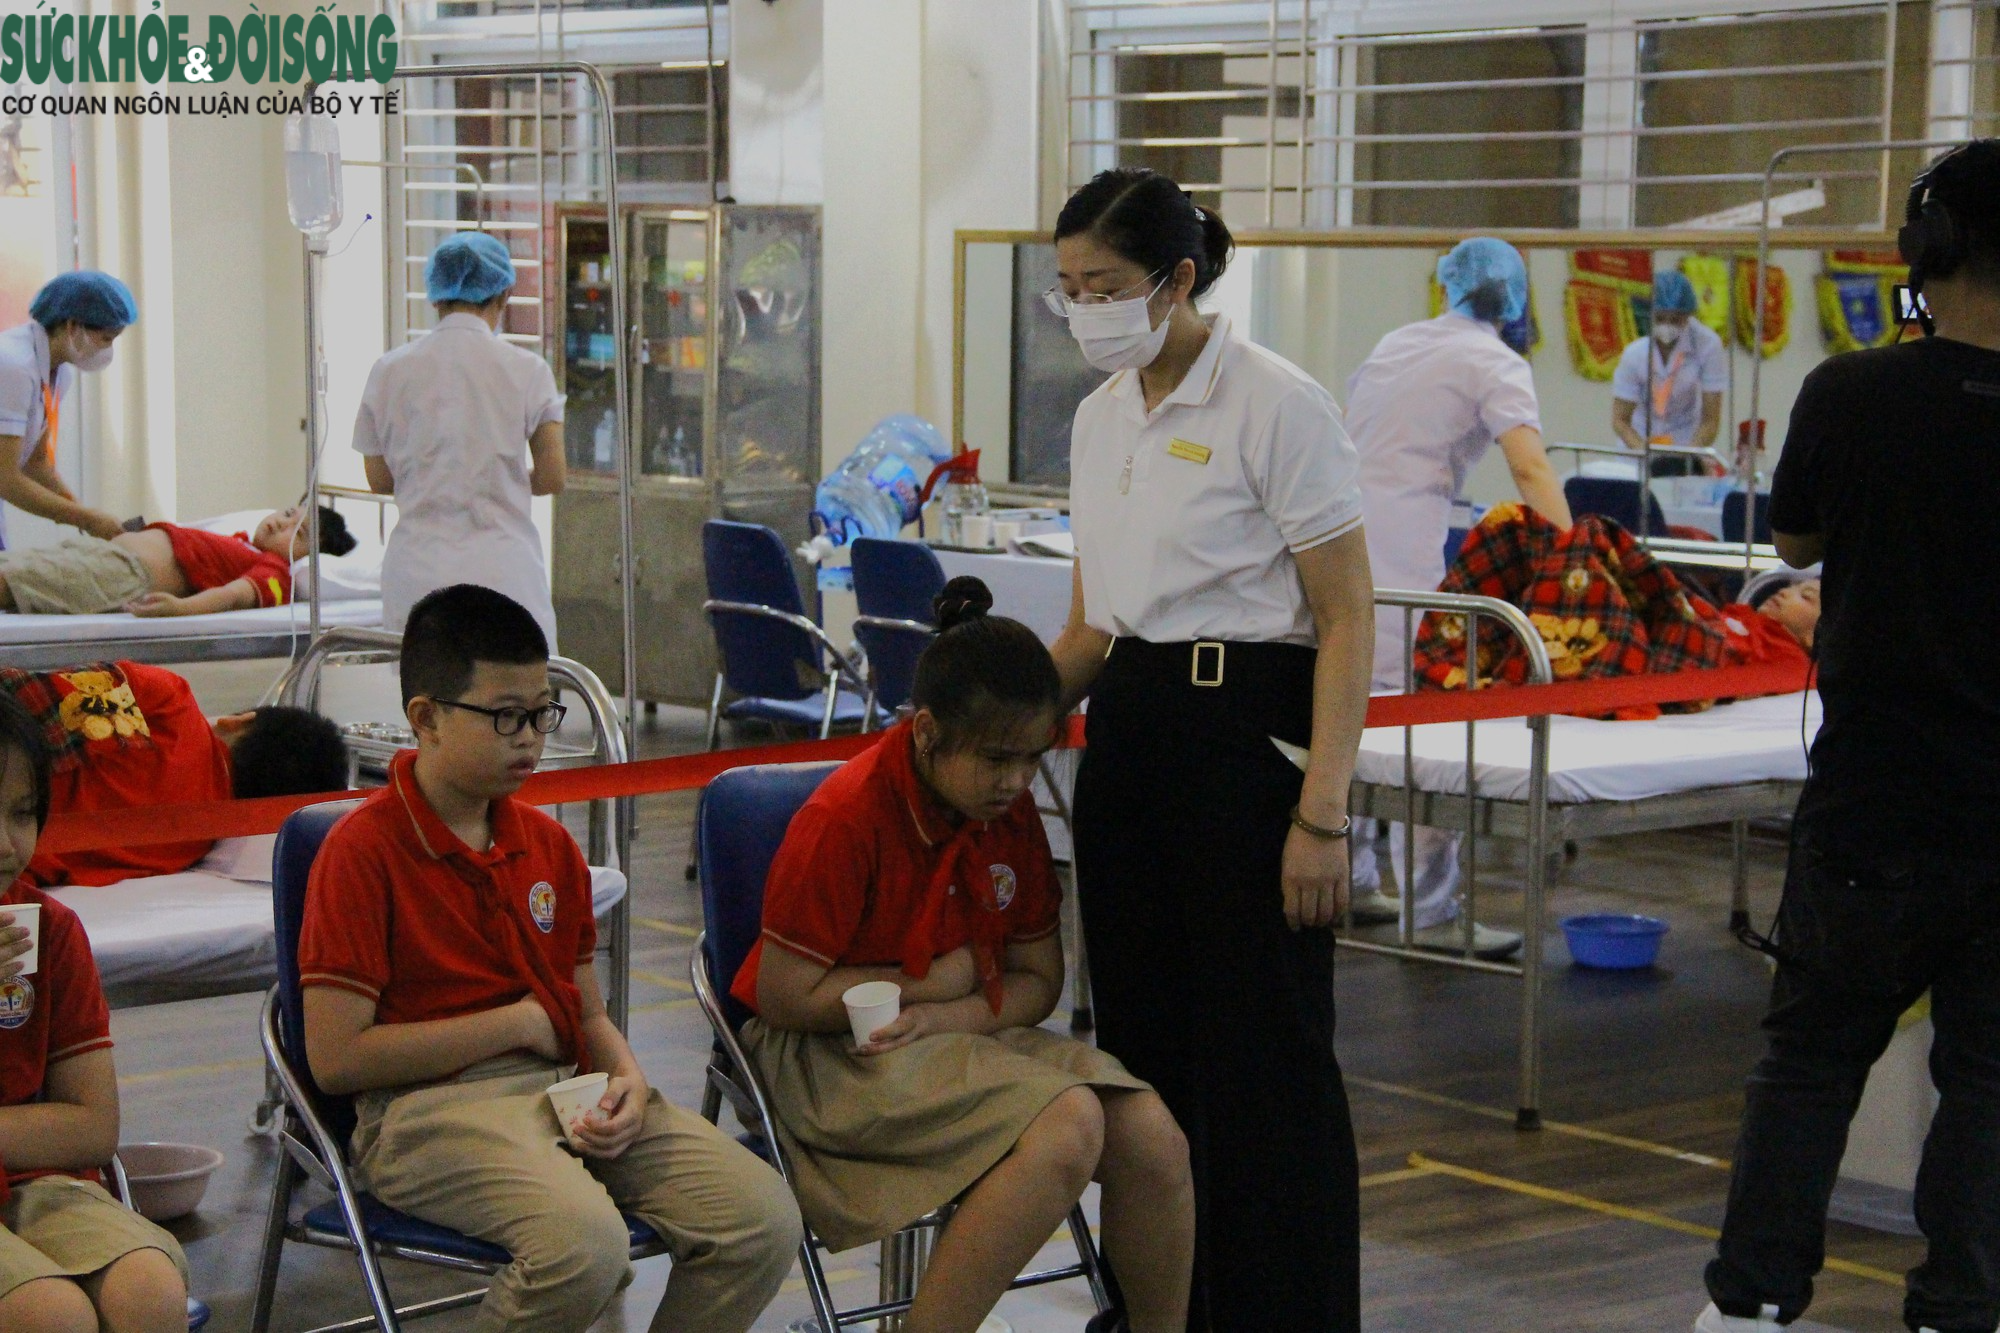 Toàn cảnh cuộc diễn tập điều tra, xử lý ngộ độc thực phẩm tập thể tại trường học - Ảnh 13.